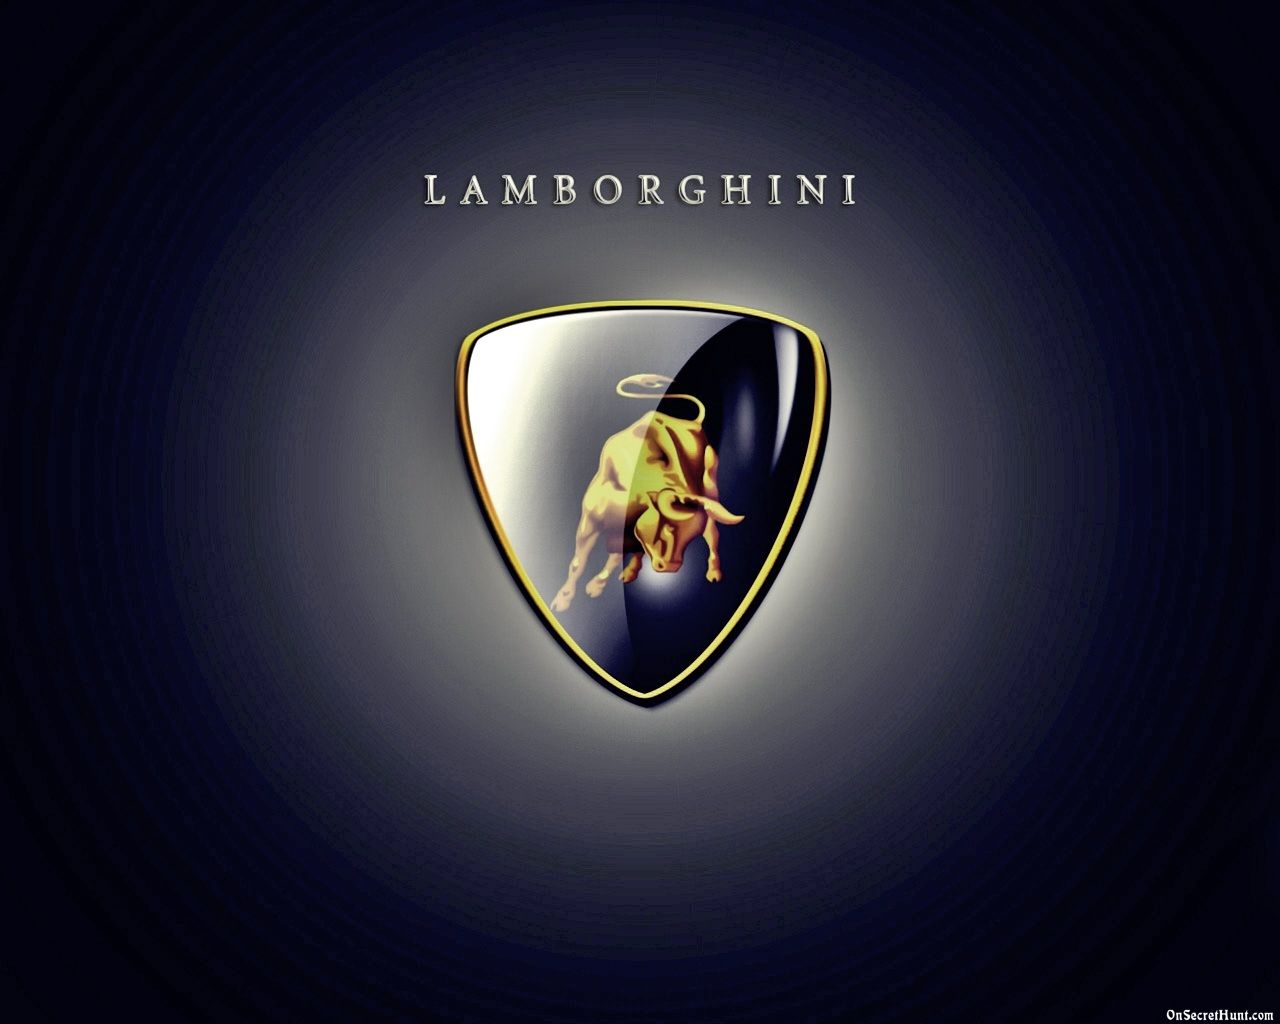 Lamborghini Wallpaper Hd - Lamborghini Logo Wallpaper Hd Blue - HD Wallpaper 